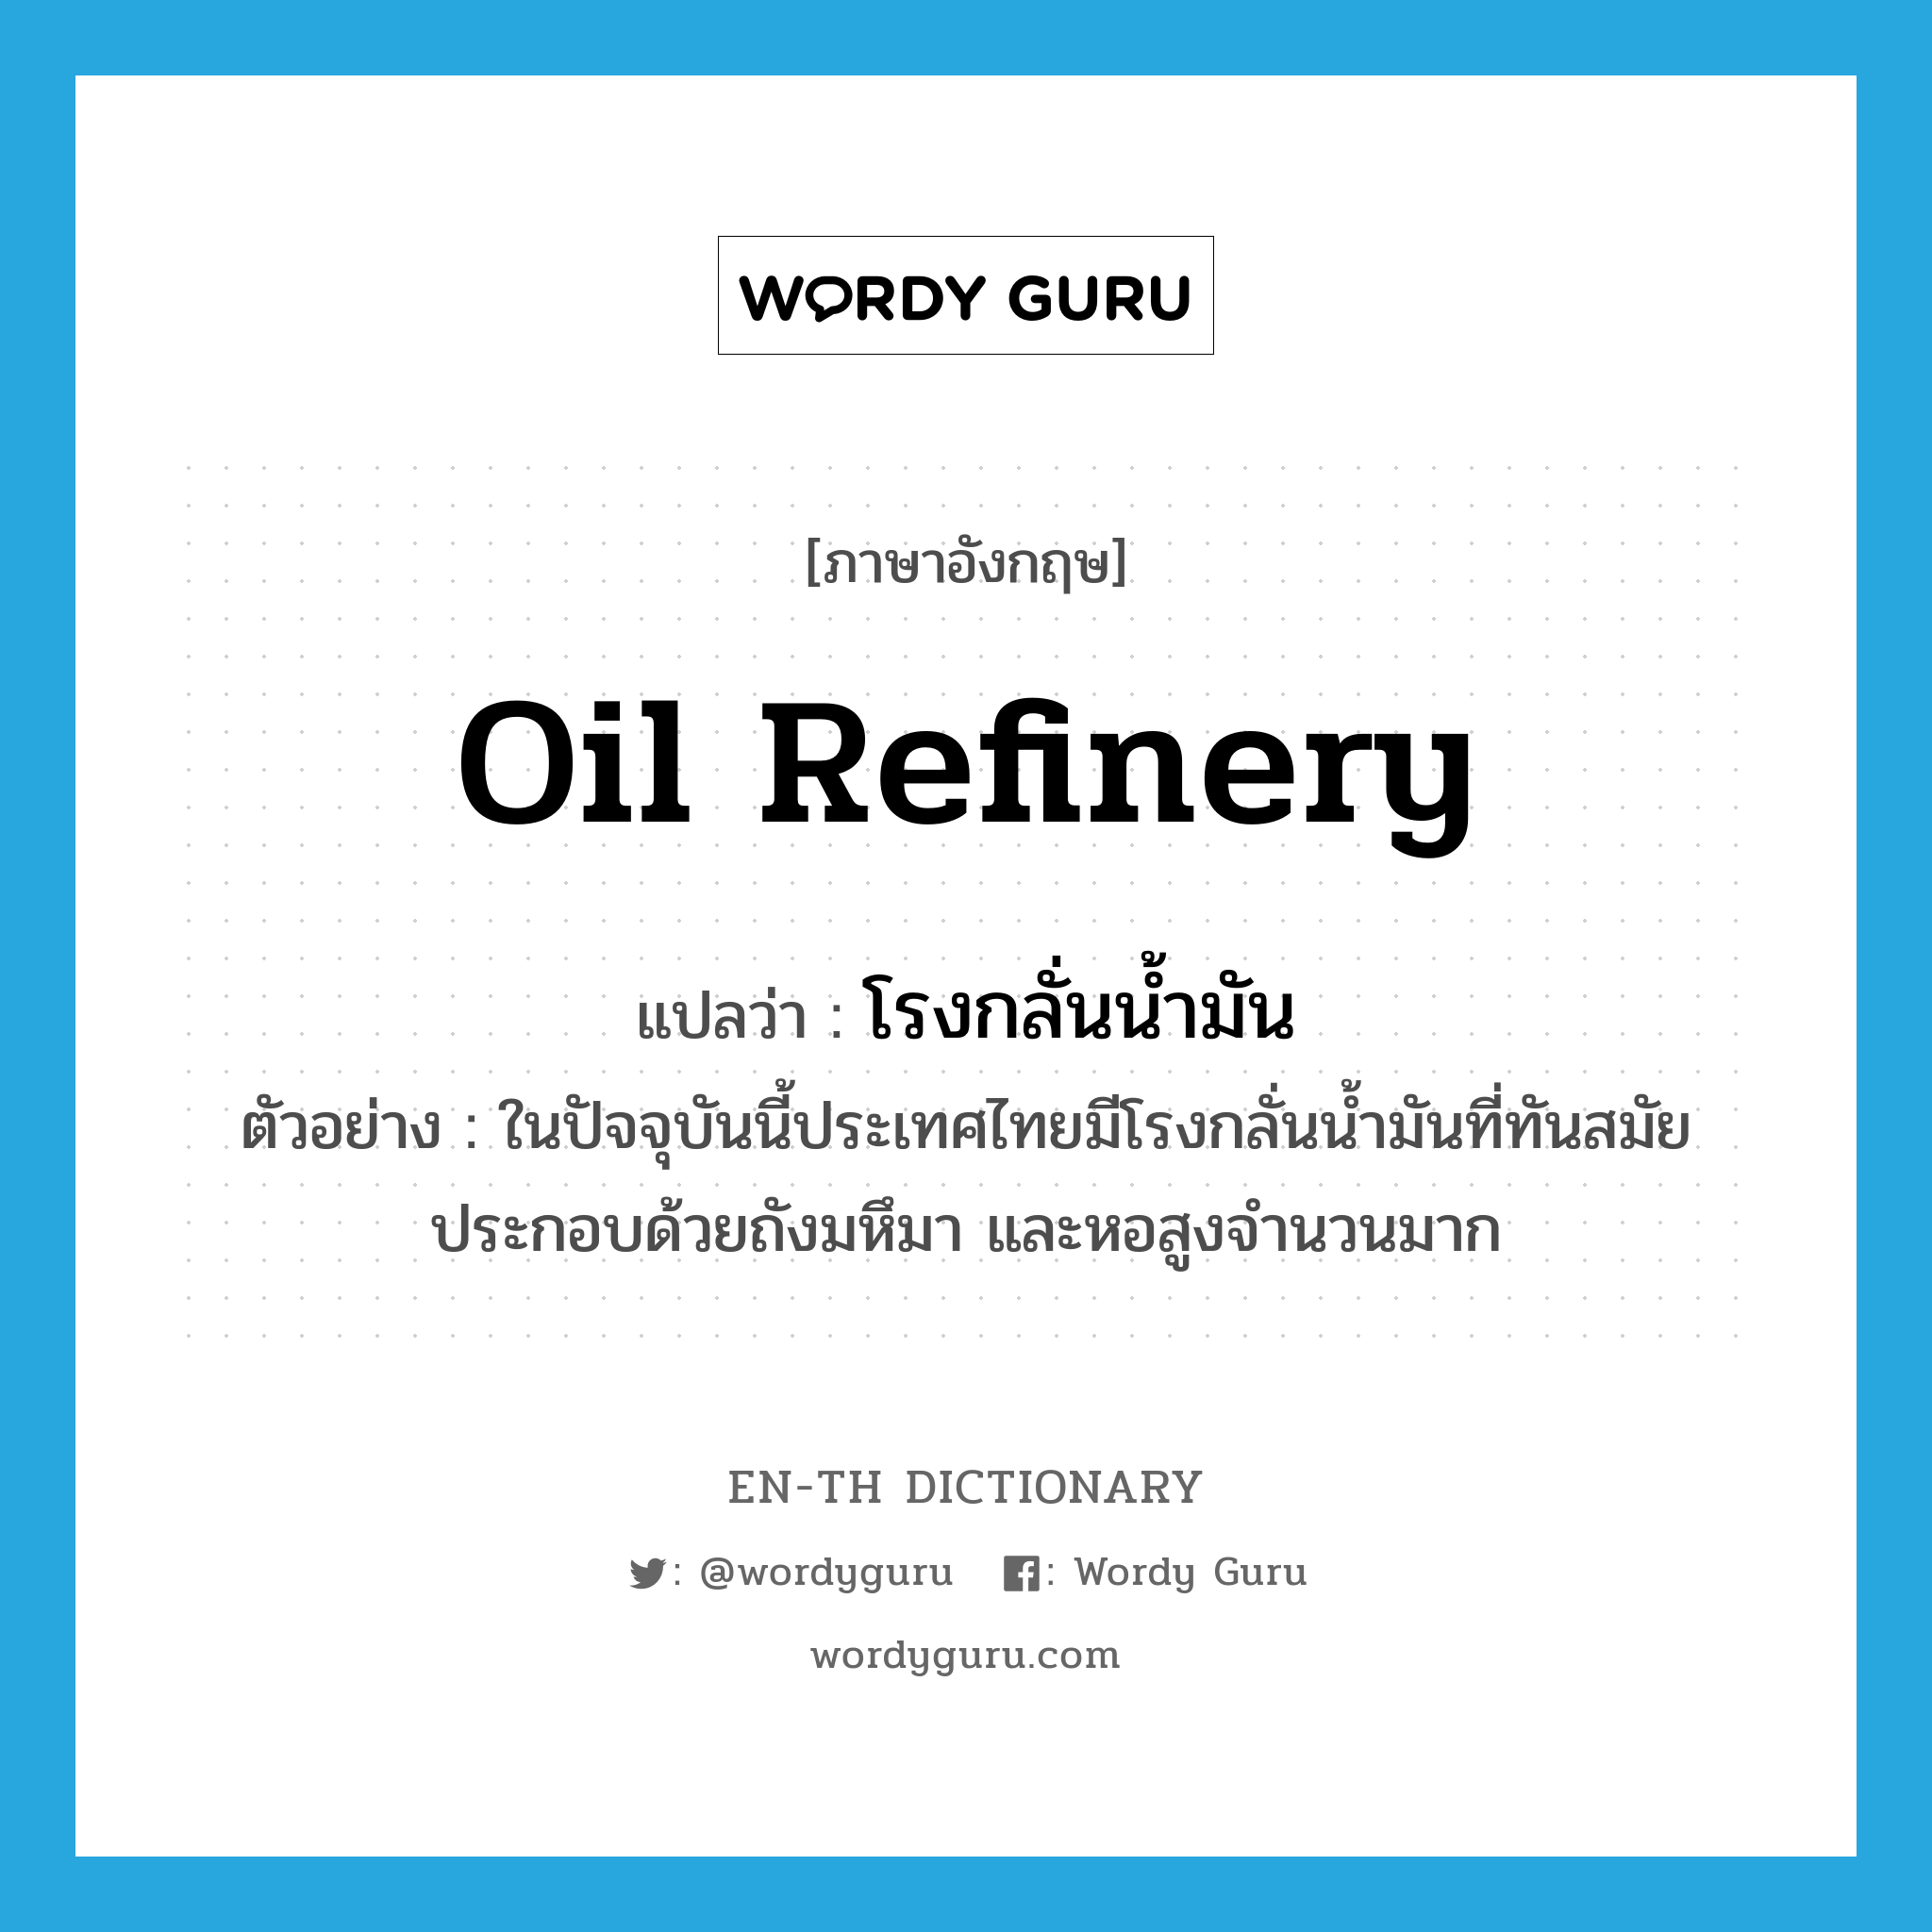 oil refinery แปลว่า?, คำศัพท์ภาษาอังกฤษ oil refinery แปลว่า โรงกลั่นน้ำมัน ประเภท N ตัวอย่าง ในปัจจุบันนี้ประเทศไทยมีโรงกลั่นน้ำมันที่ทันสมัย ประกอบด้วยถังมหึมา และหอสูงจำนวนมาก หมวด N